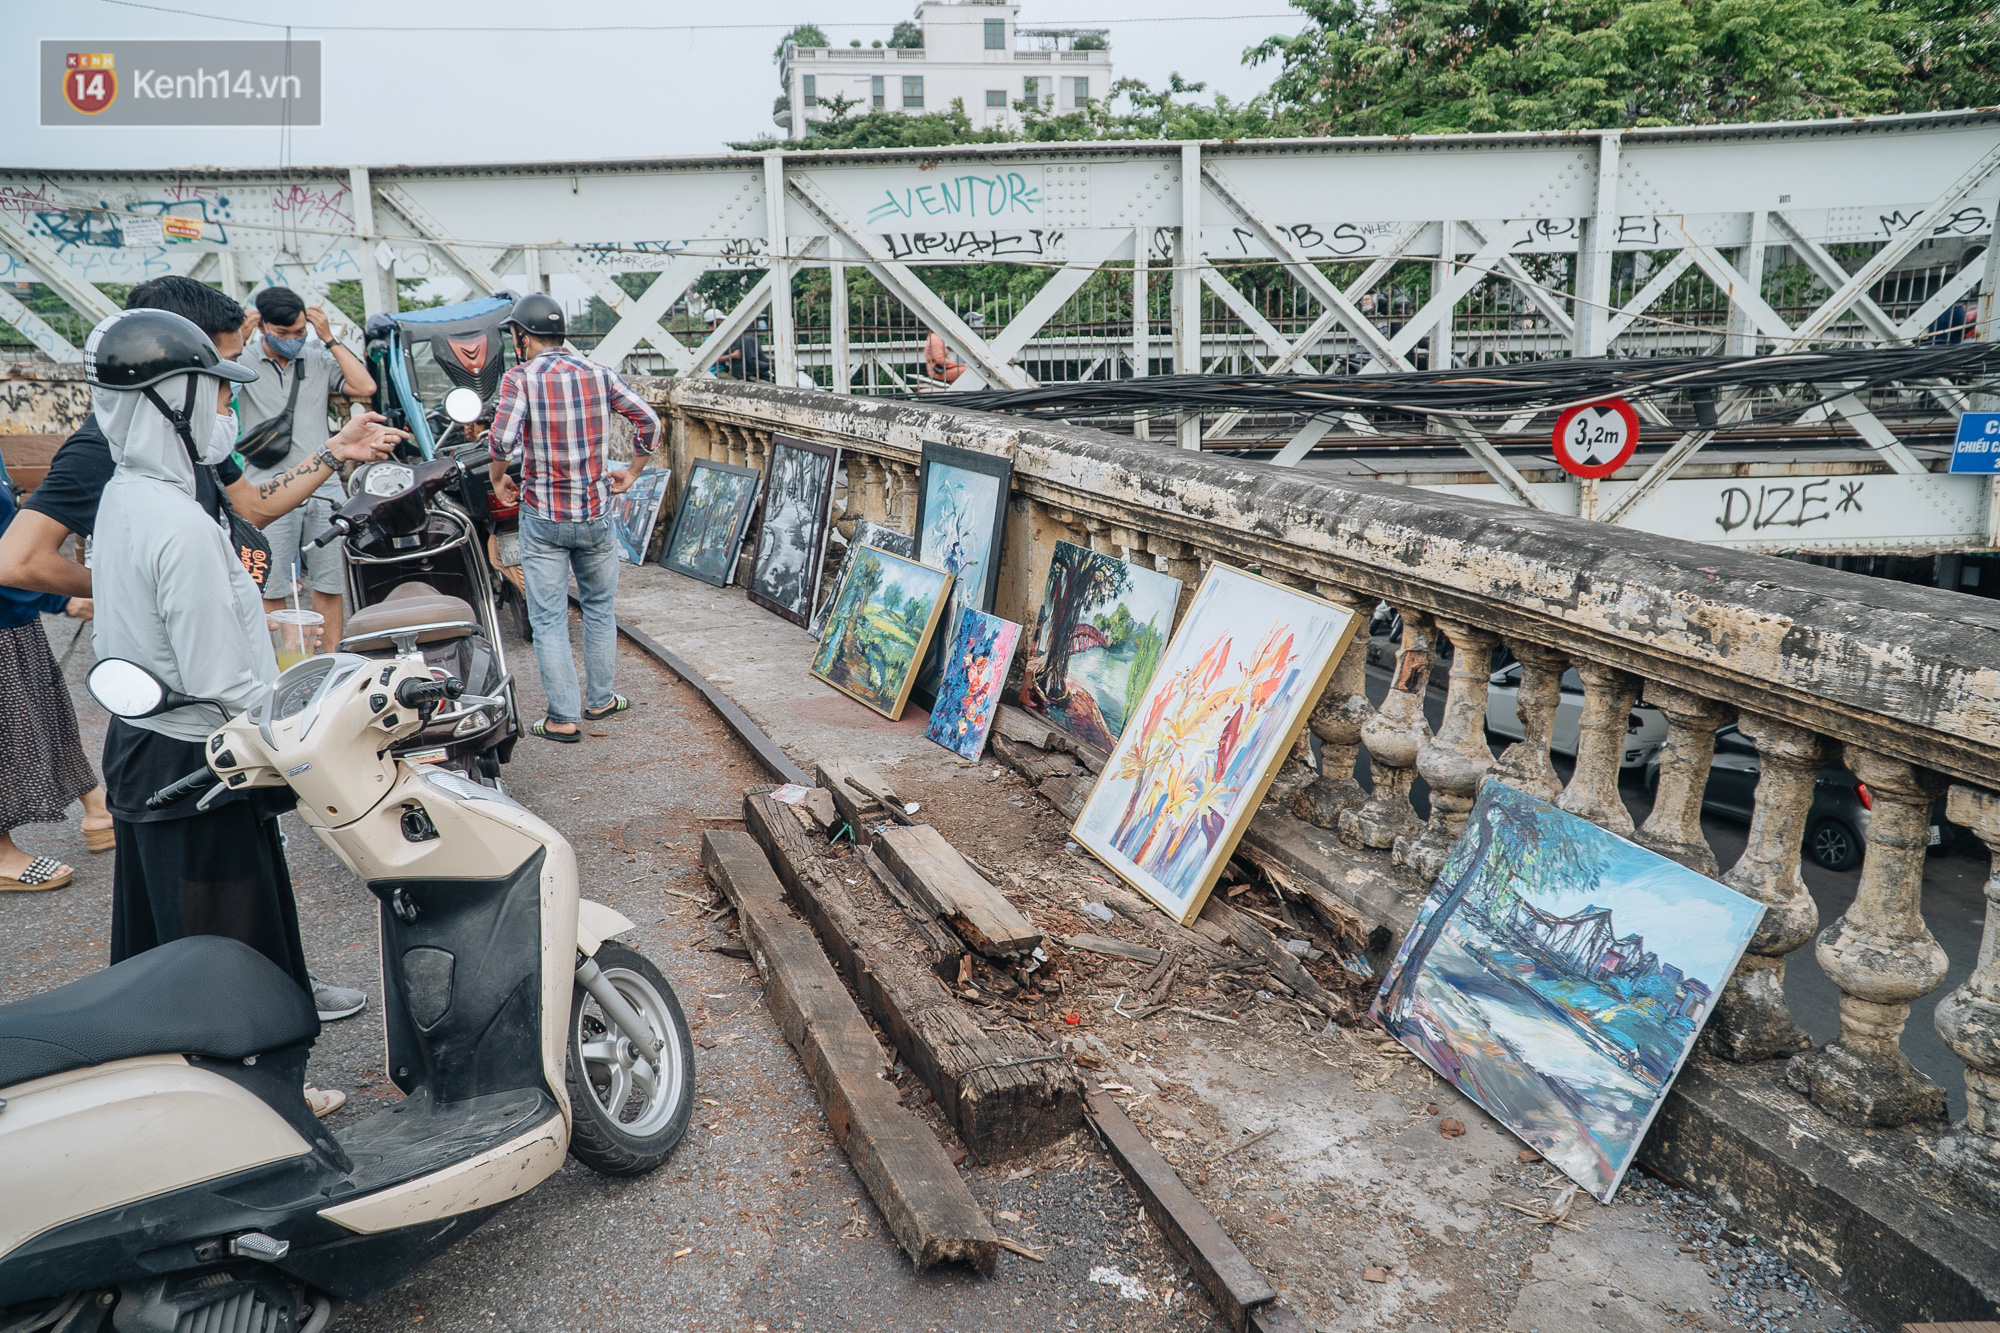 Gặp người họa sĩ già bày bán tranh trên cầu Long Biên: Tôi vẽ tranh, bán với mức giá bình dân, trừ tiền màu, họa phẩm, vẫn còn chút đong gạo - Ảnh 1.